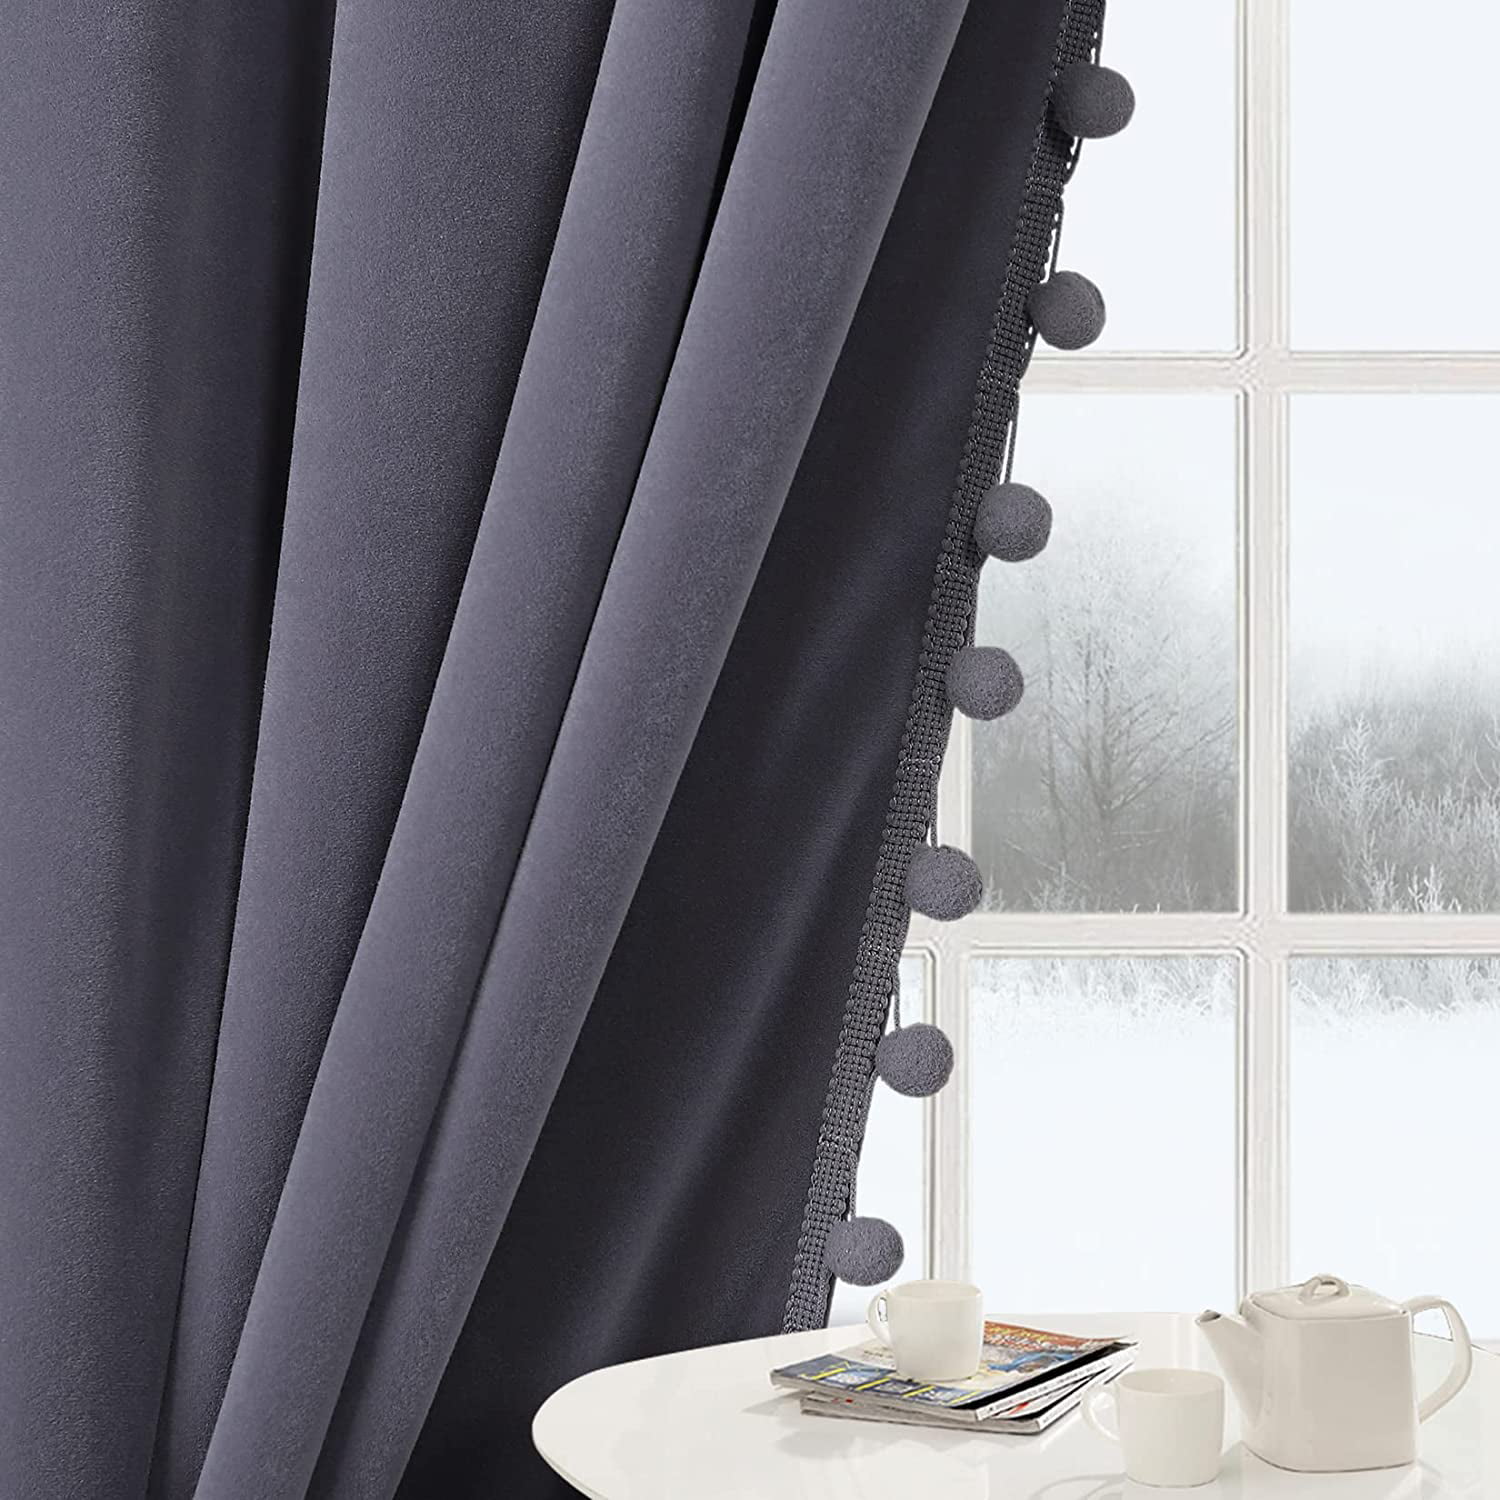 Velvet Pom Pom Curtains 108 Inches Long-Pompoms Tasseled Room